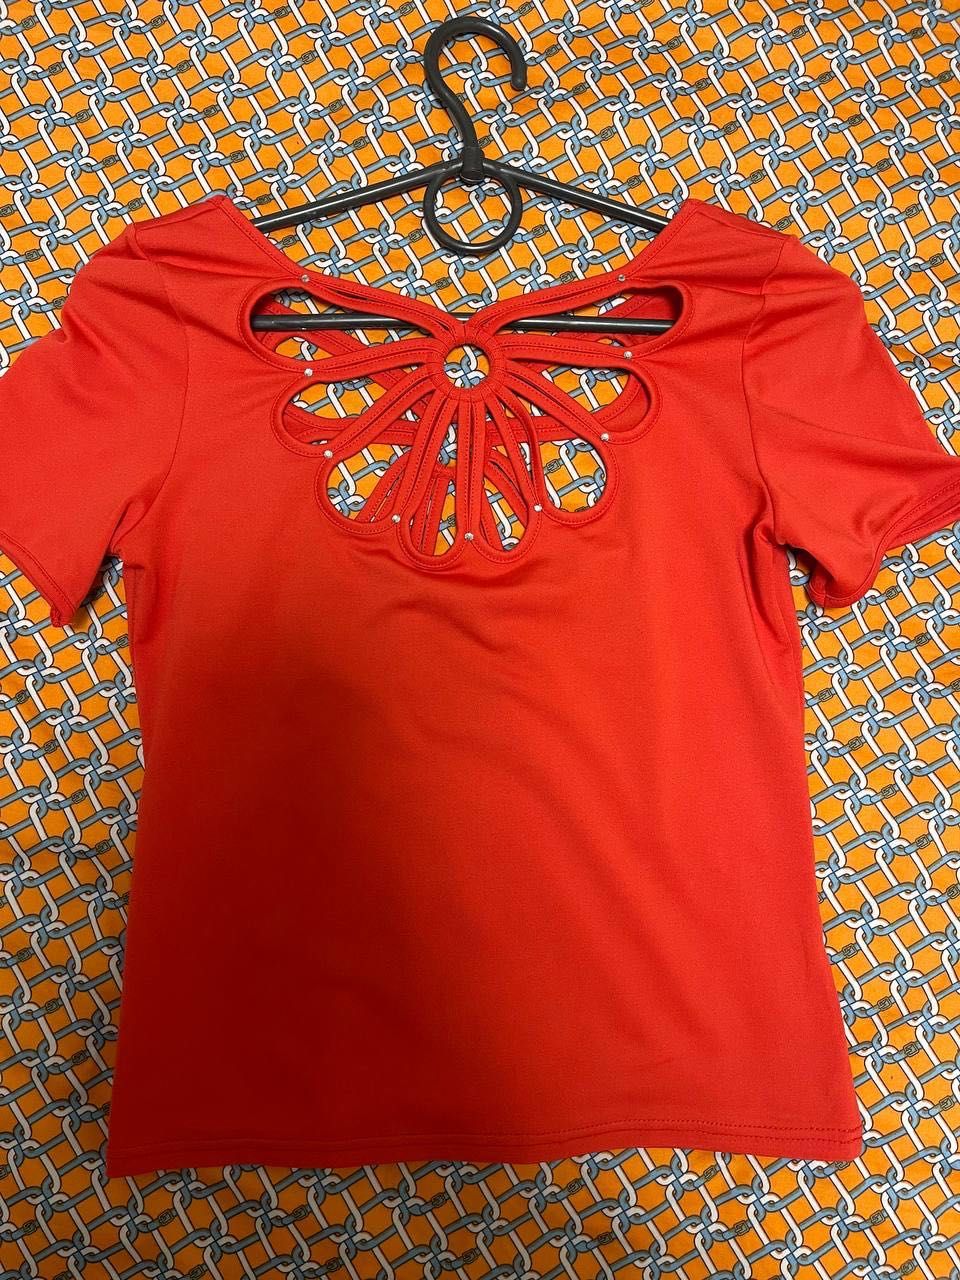 Женская кофта футболка топ блузка майка рубашка италия (итальянская)